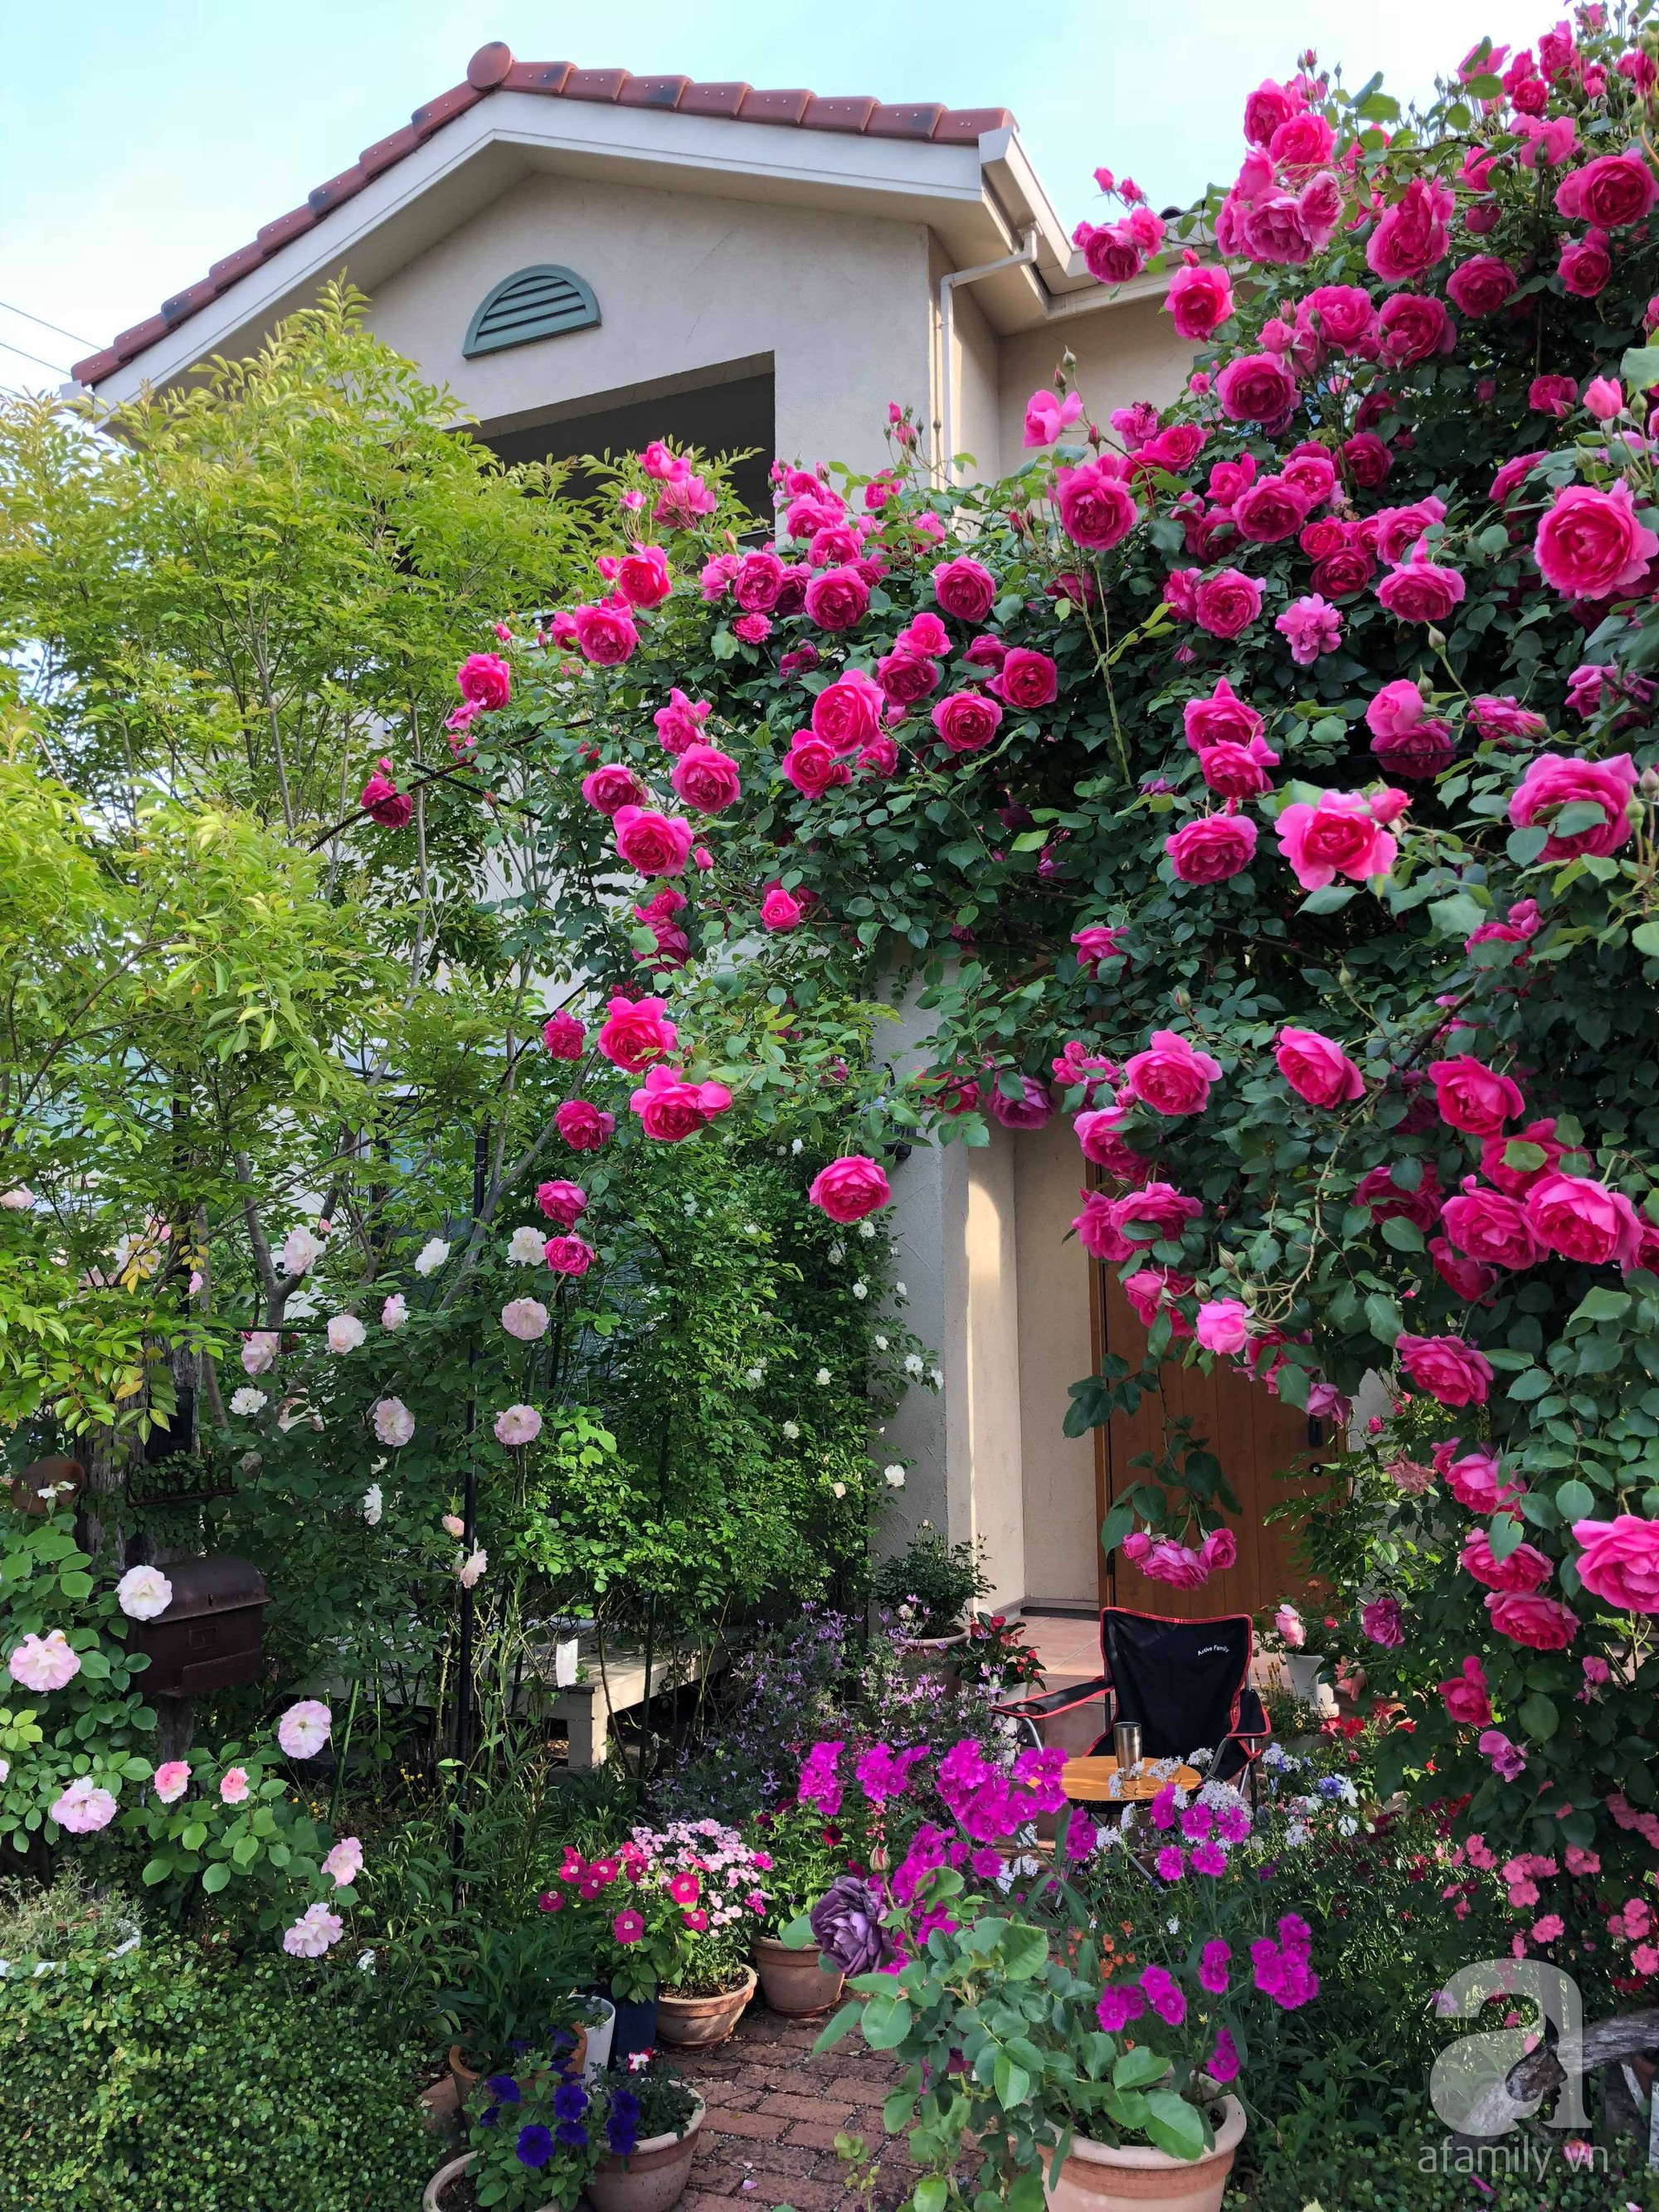 Khu vườn hoa hồng: Hãy cùng khám phá khu vườn hoa hồng đẹp nhất và phong phú nhất từ trước đến nay. Với màu sắc và hình dáng đa dạng của hoa hồng, bạn sẽ có thể tìm thấy những loại hoa ưa thích của bạn và cập nhật nhanh chóng những xu hướng mới nhất.